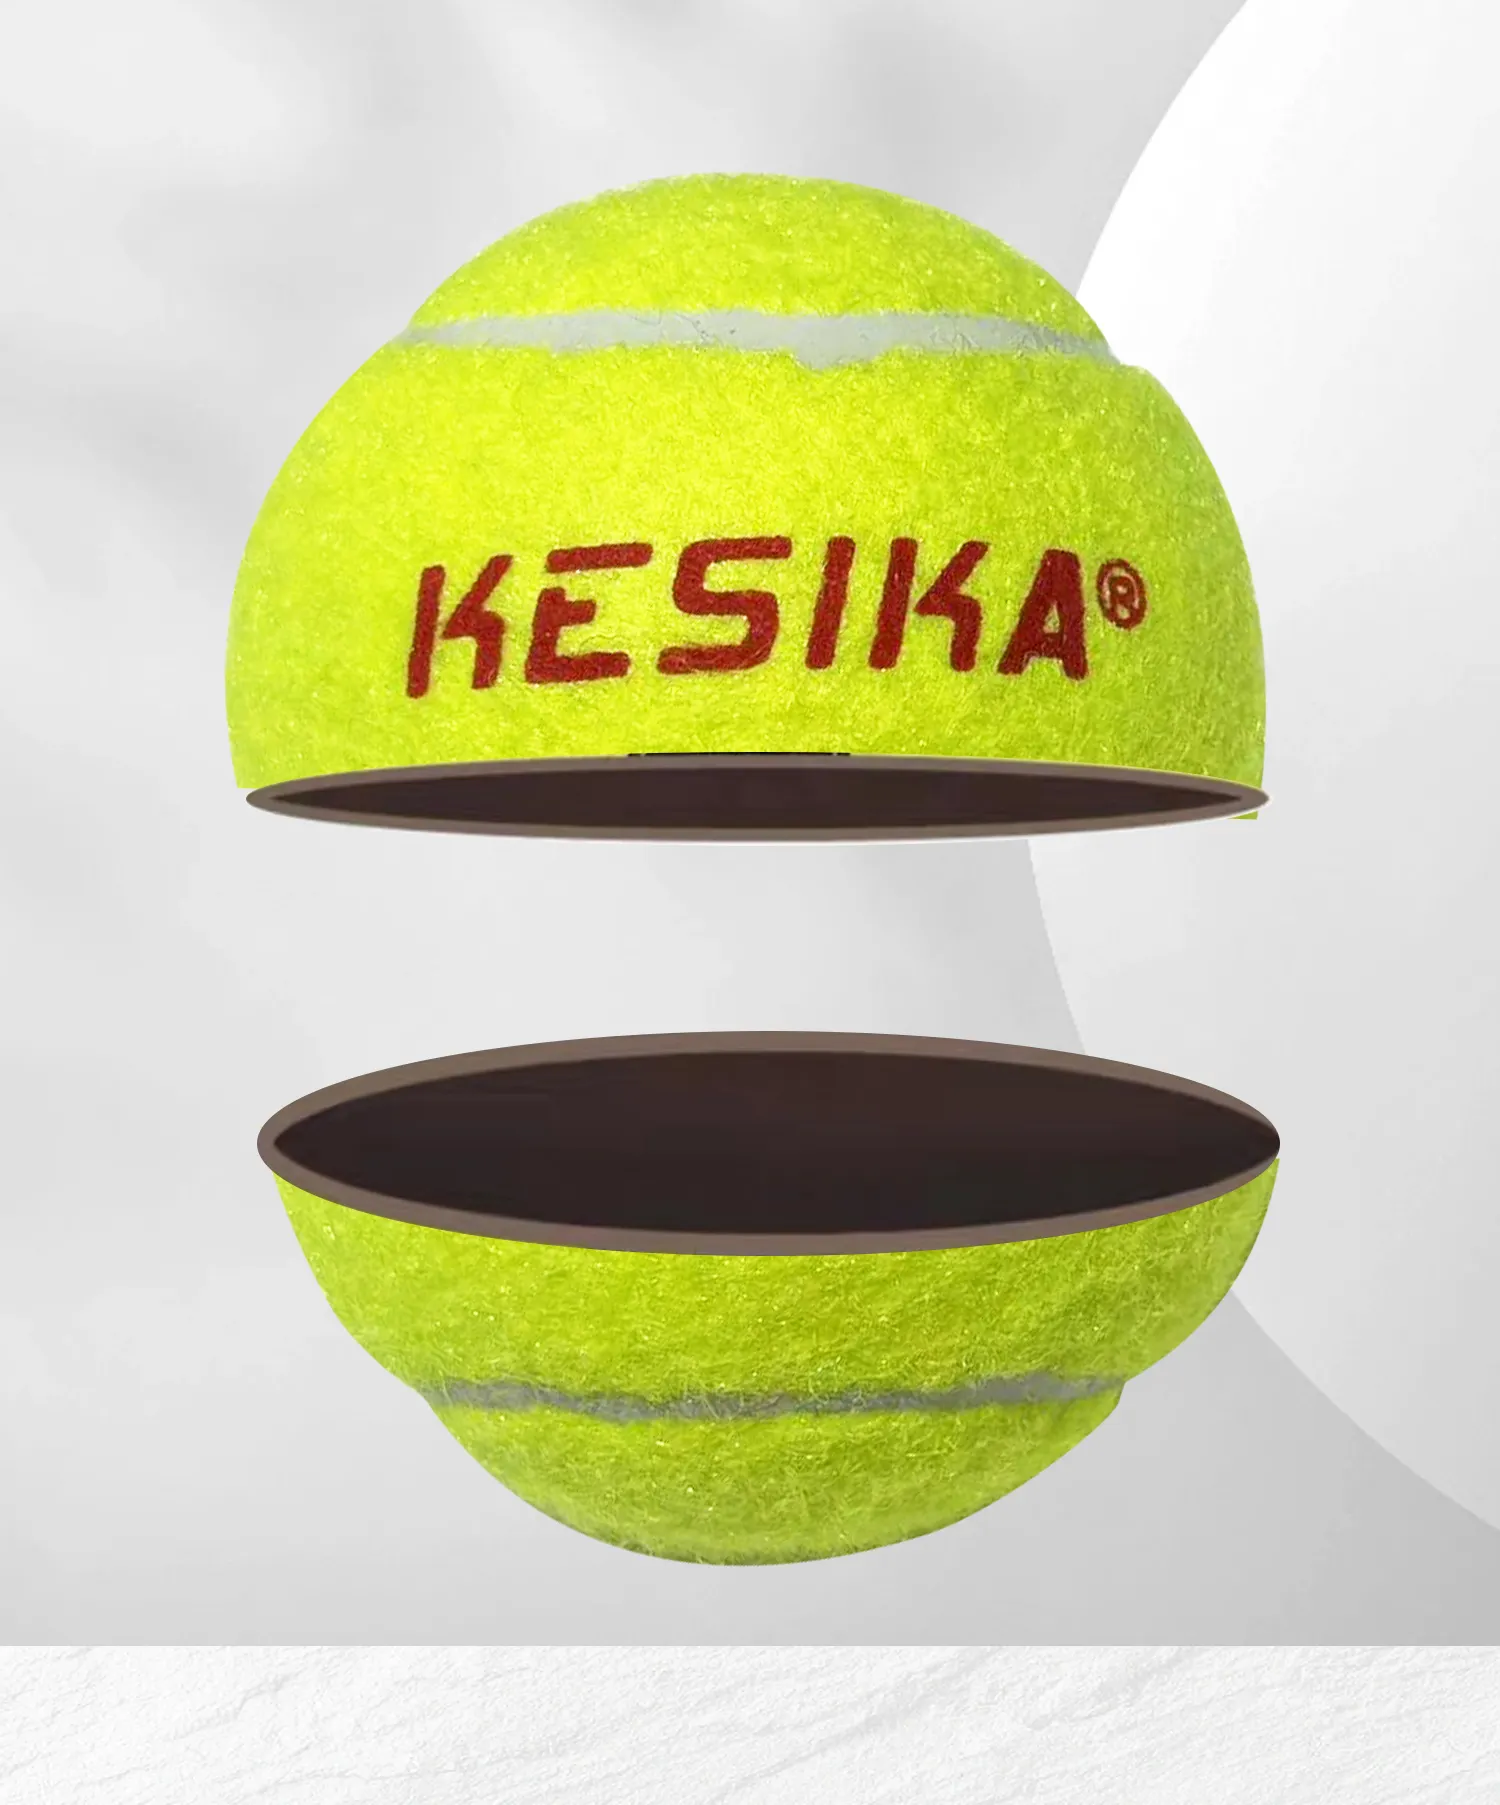 Aangepaste Goede Bounce Tennisballen Kunnen Worden Geselecteerd En Aangepaste Tenniskleur Of Logo Speciale Training Druk Tennisbal